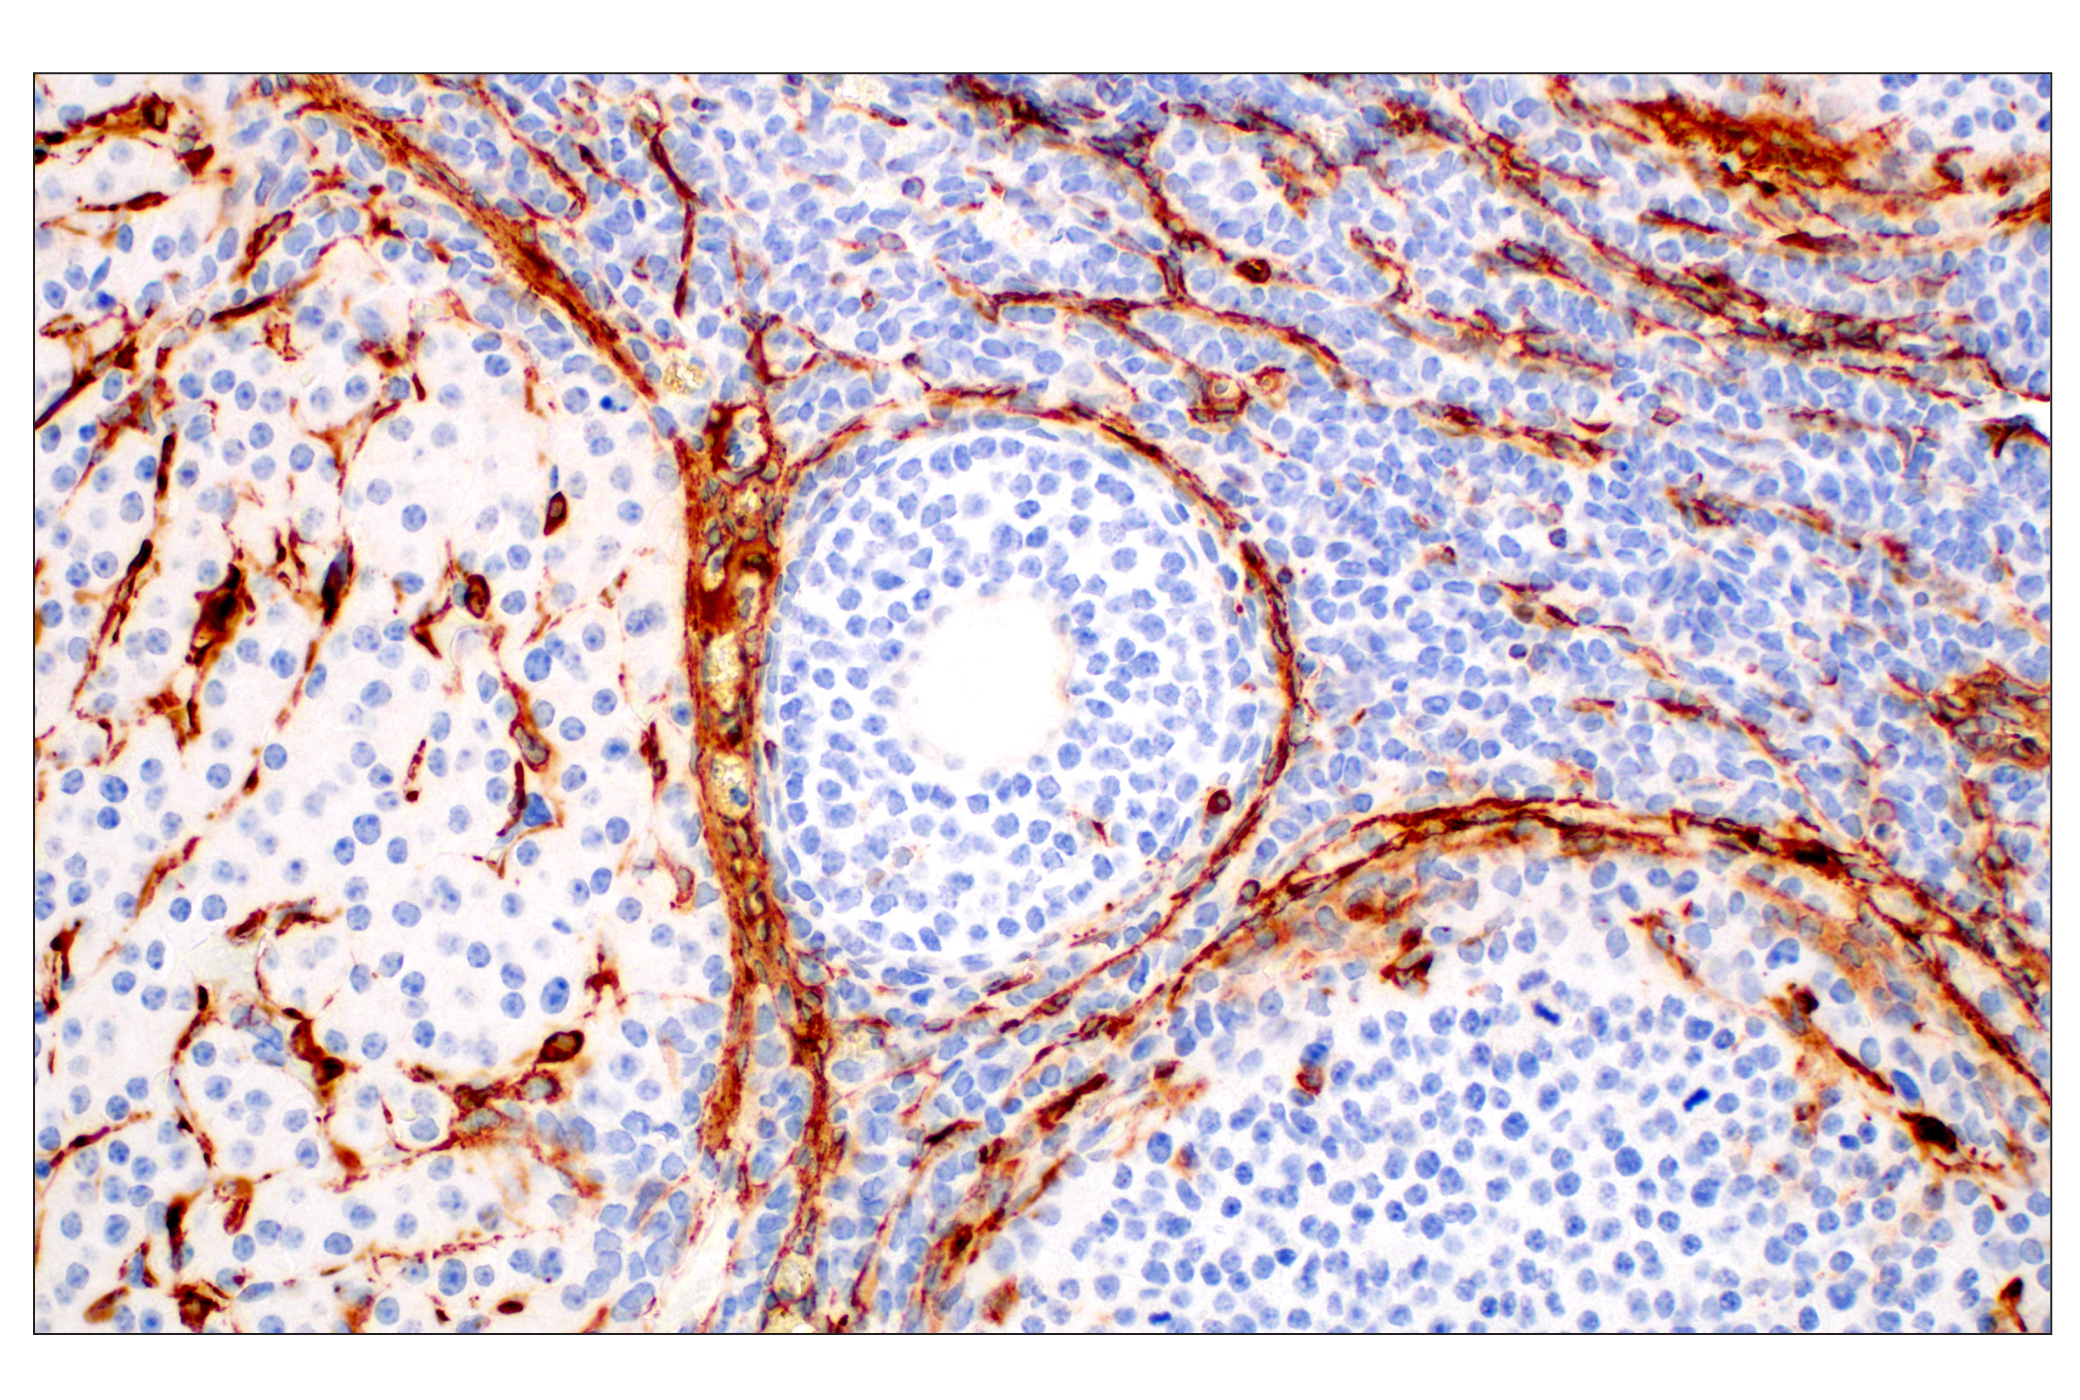  Image 51: TGF-β Fibrosis Pathway Antibody Sampler Kit